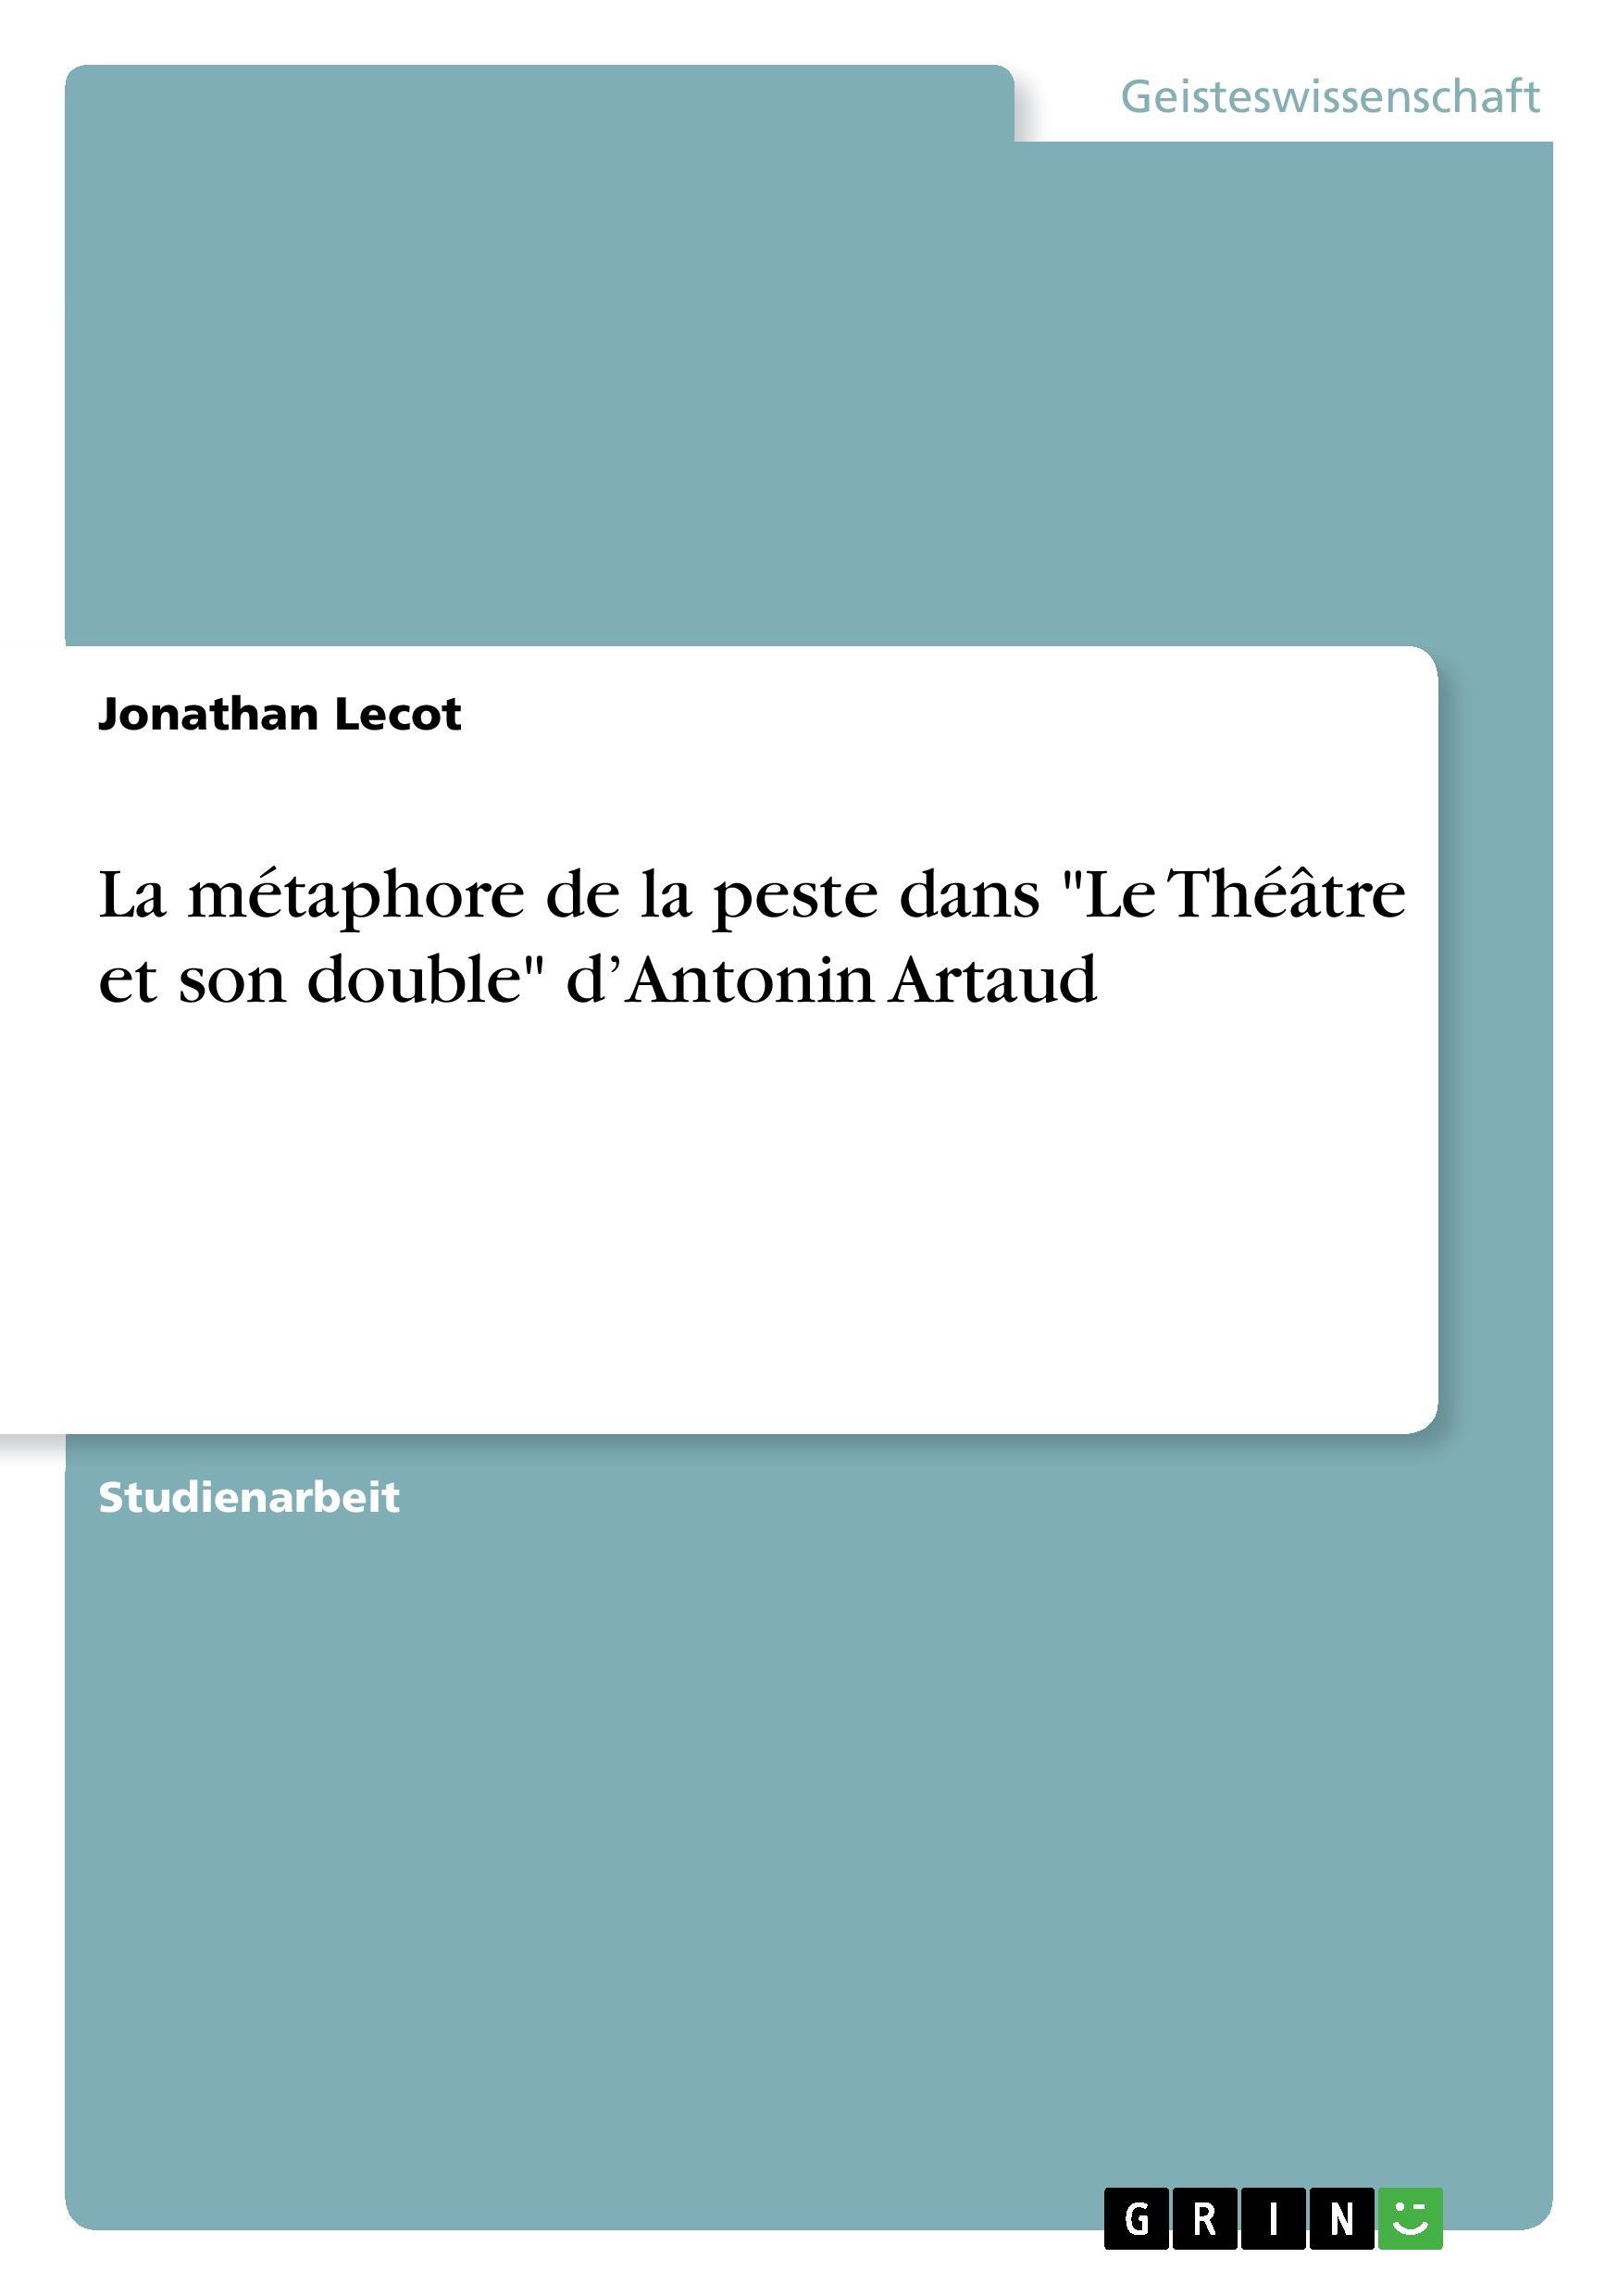 La métaphore de la peste dans  Le Théâtre et son double  d Antonin Artaud - Lecot, Jonathan